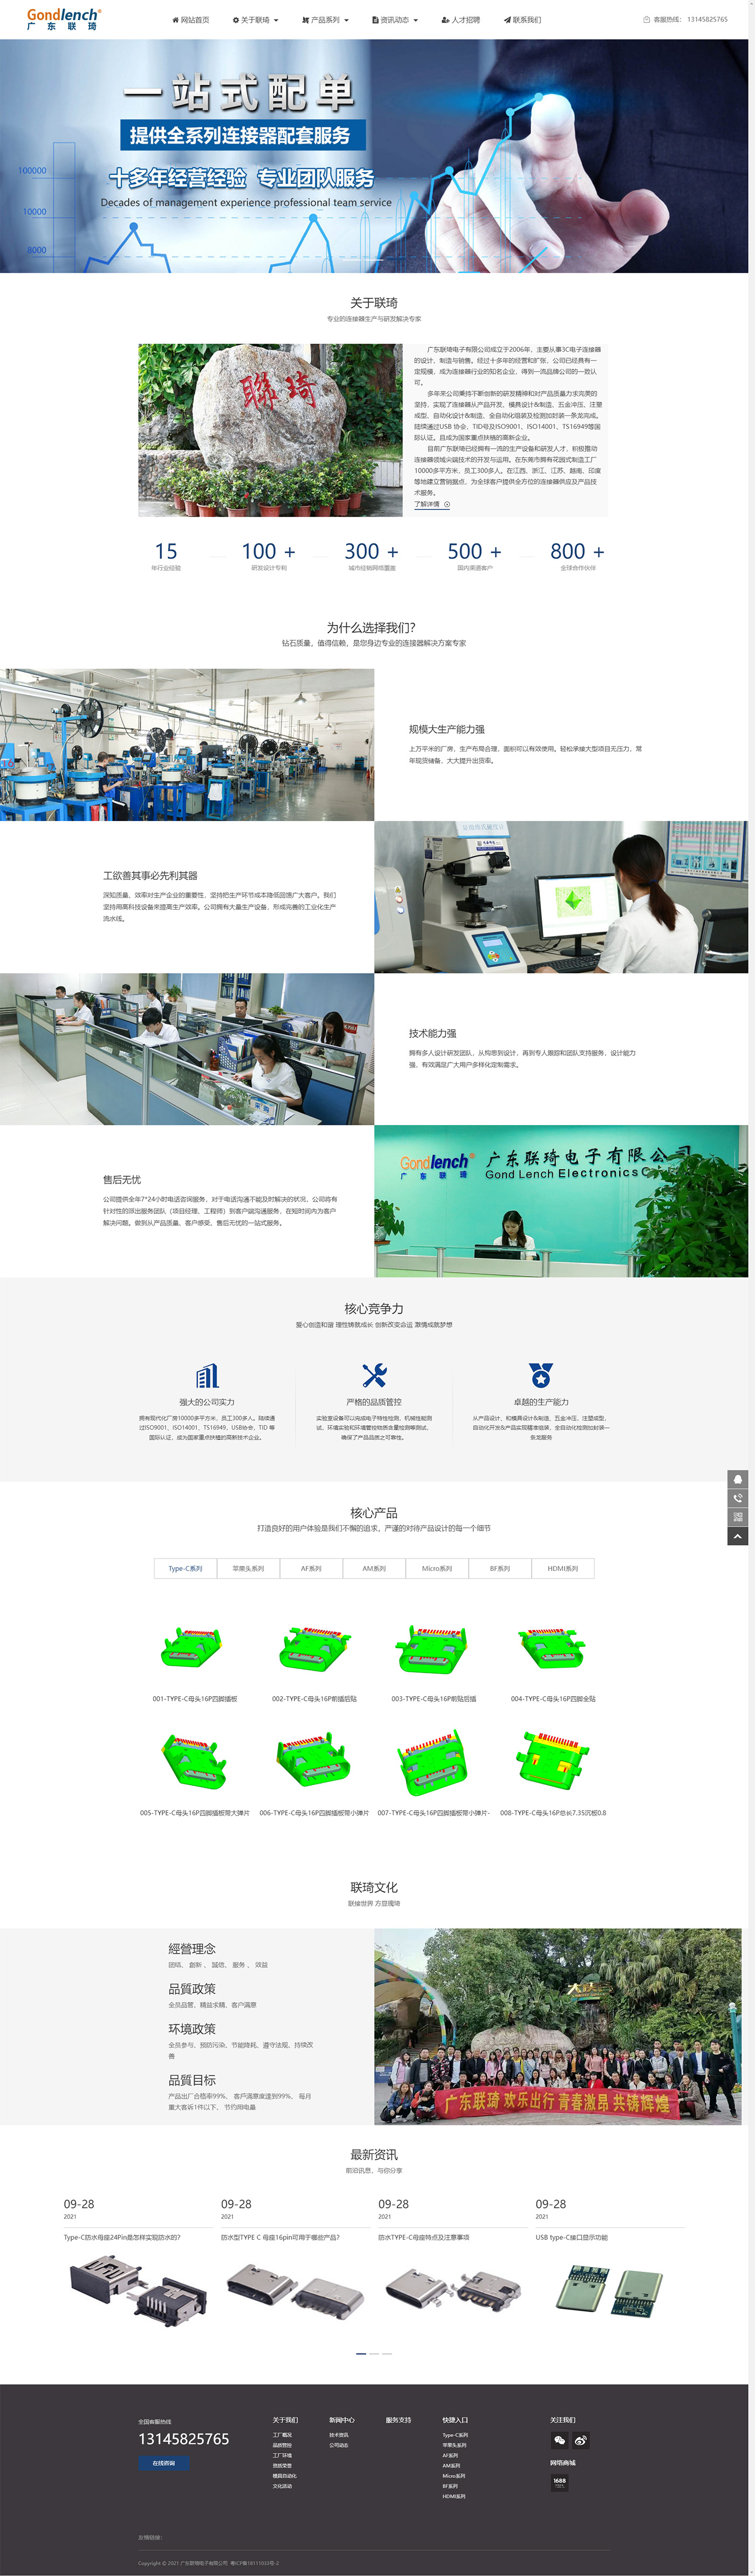 广东联琦电子有限公司-专业连接器行业解决方案提供商.jpg